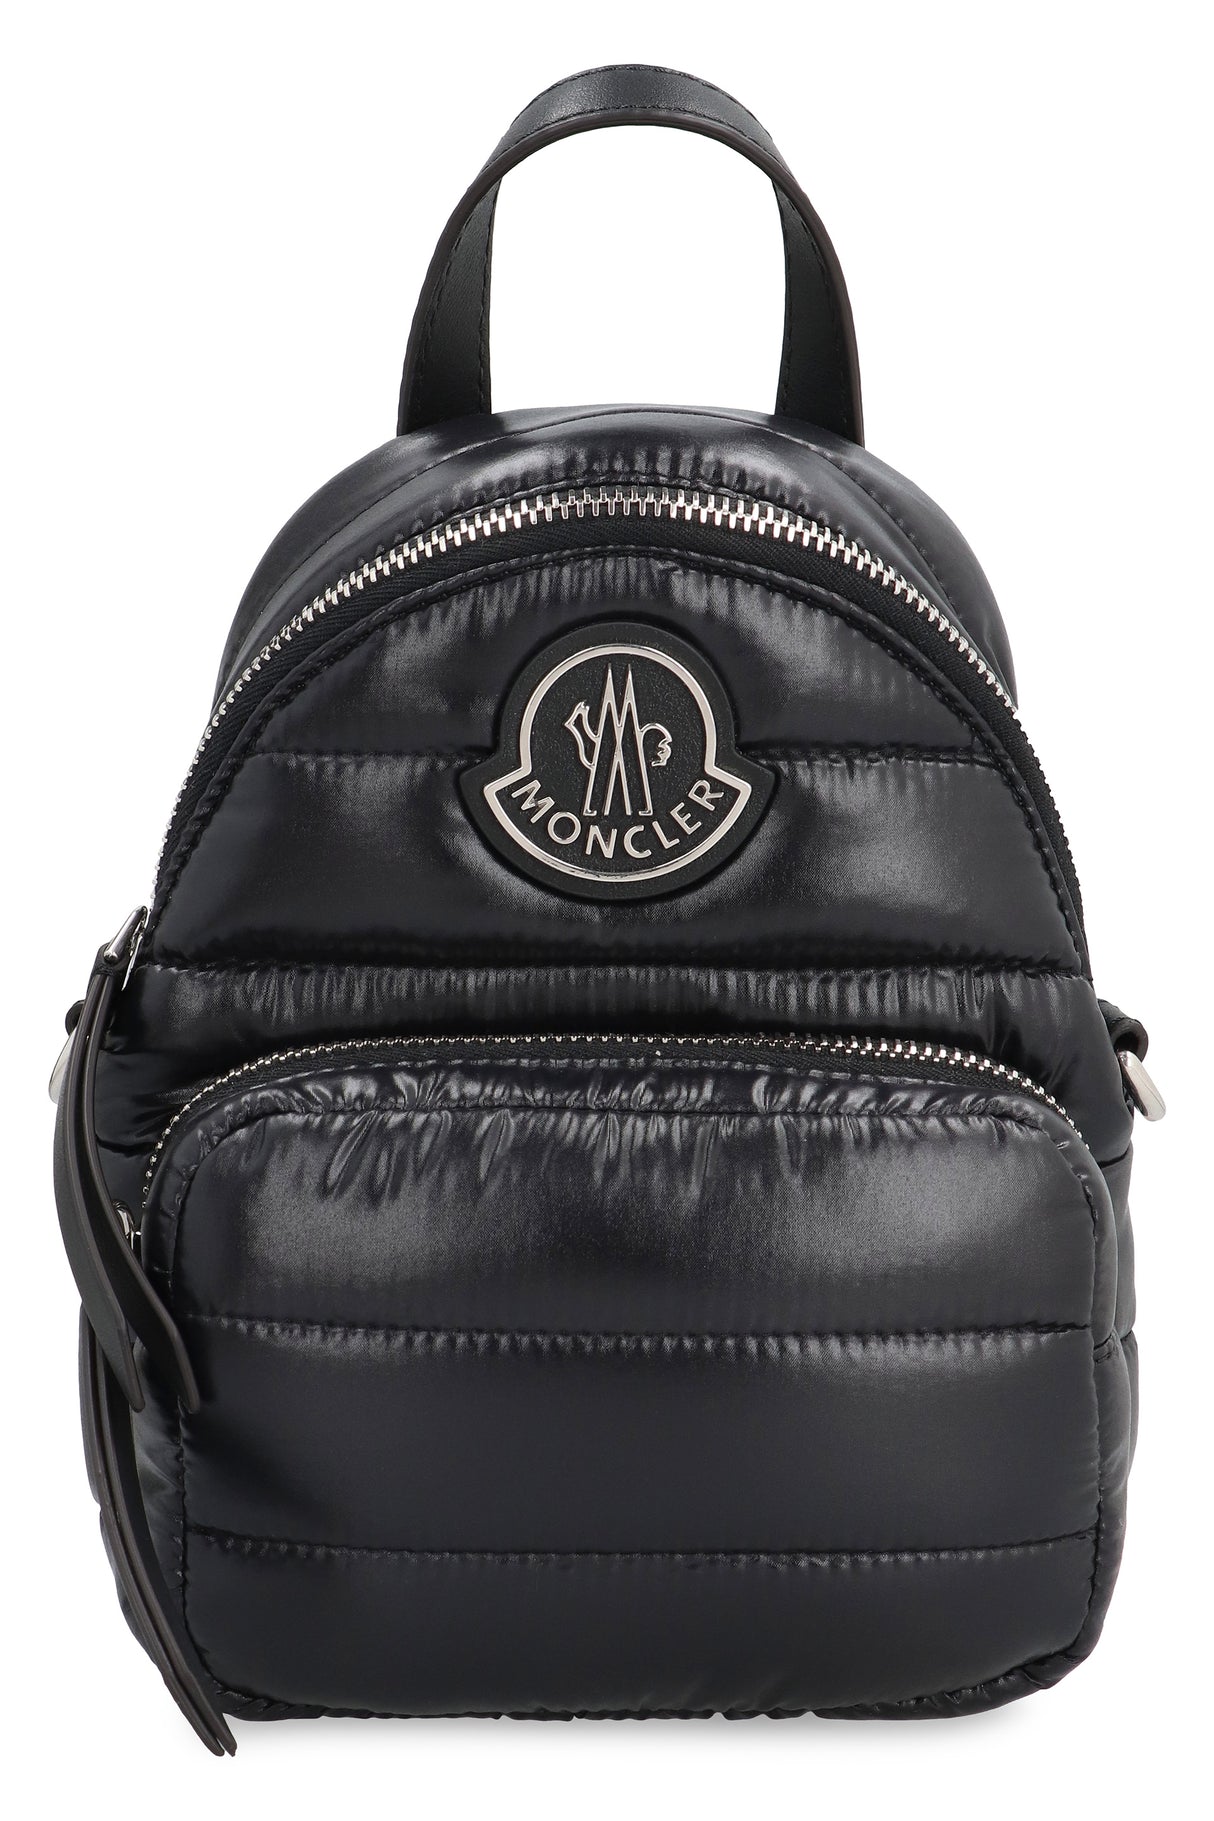 MONCLER Black Nylon Messenger Handbag for Women - Padded, Leather Details, Front Pocket, Removable Strap